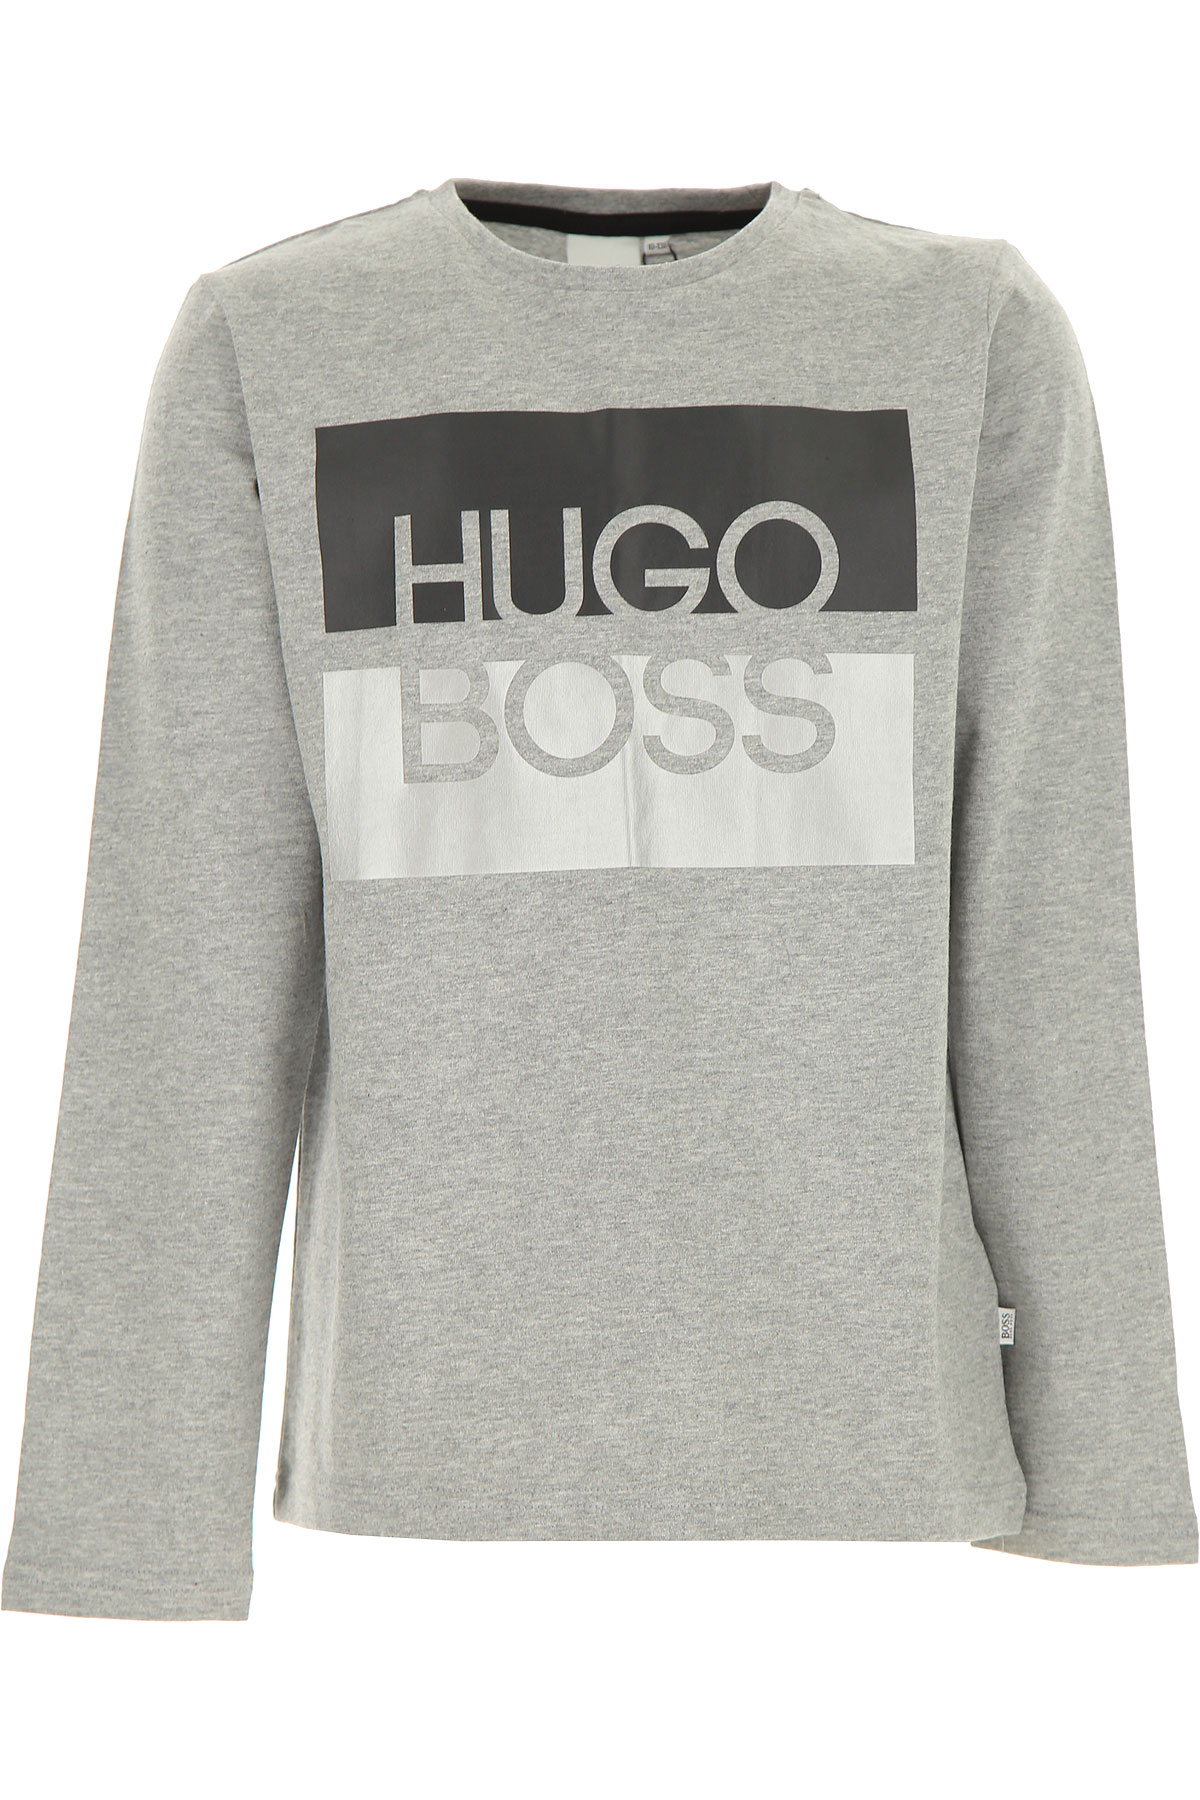 Hugo Boss Kinder T-Shirt für Jungen Günstig im Sale, Grau, Baumwolle, 2017, 12Y 14Y 16Y 8Y